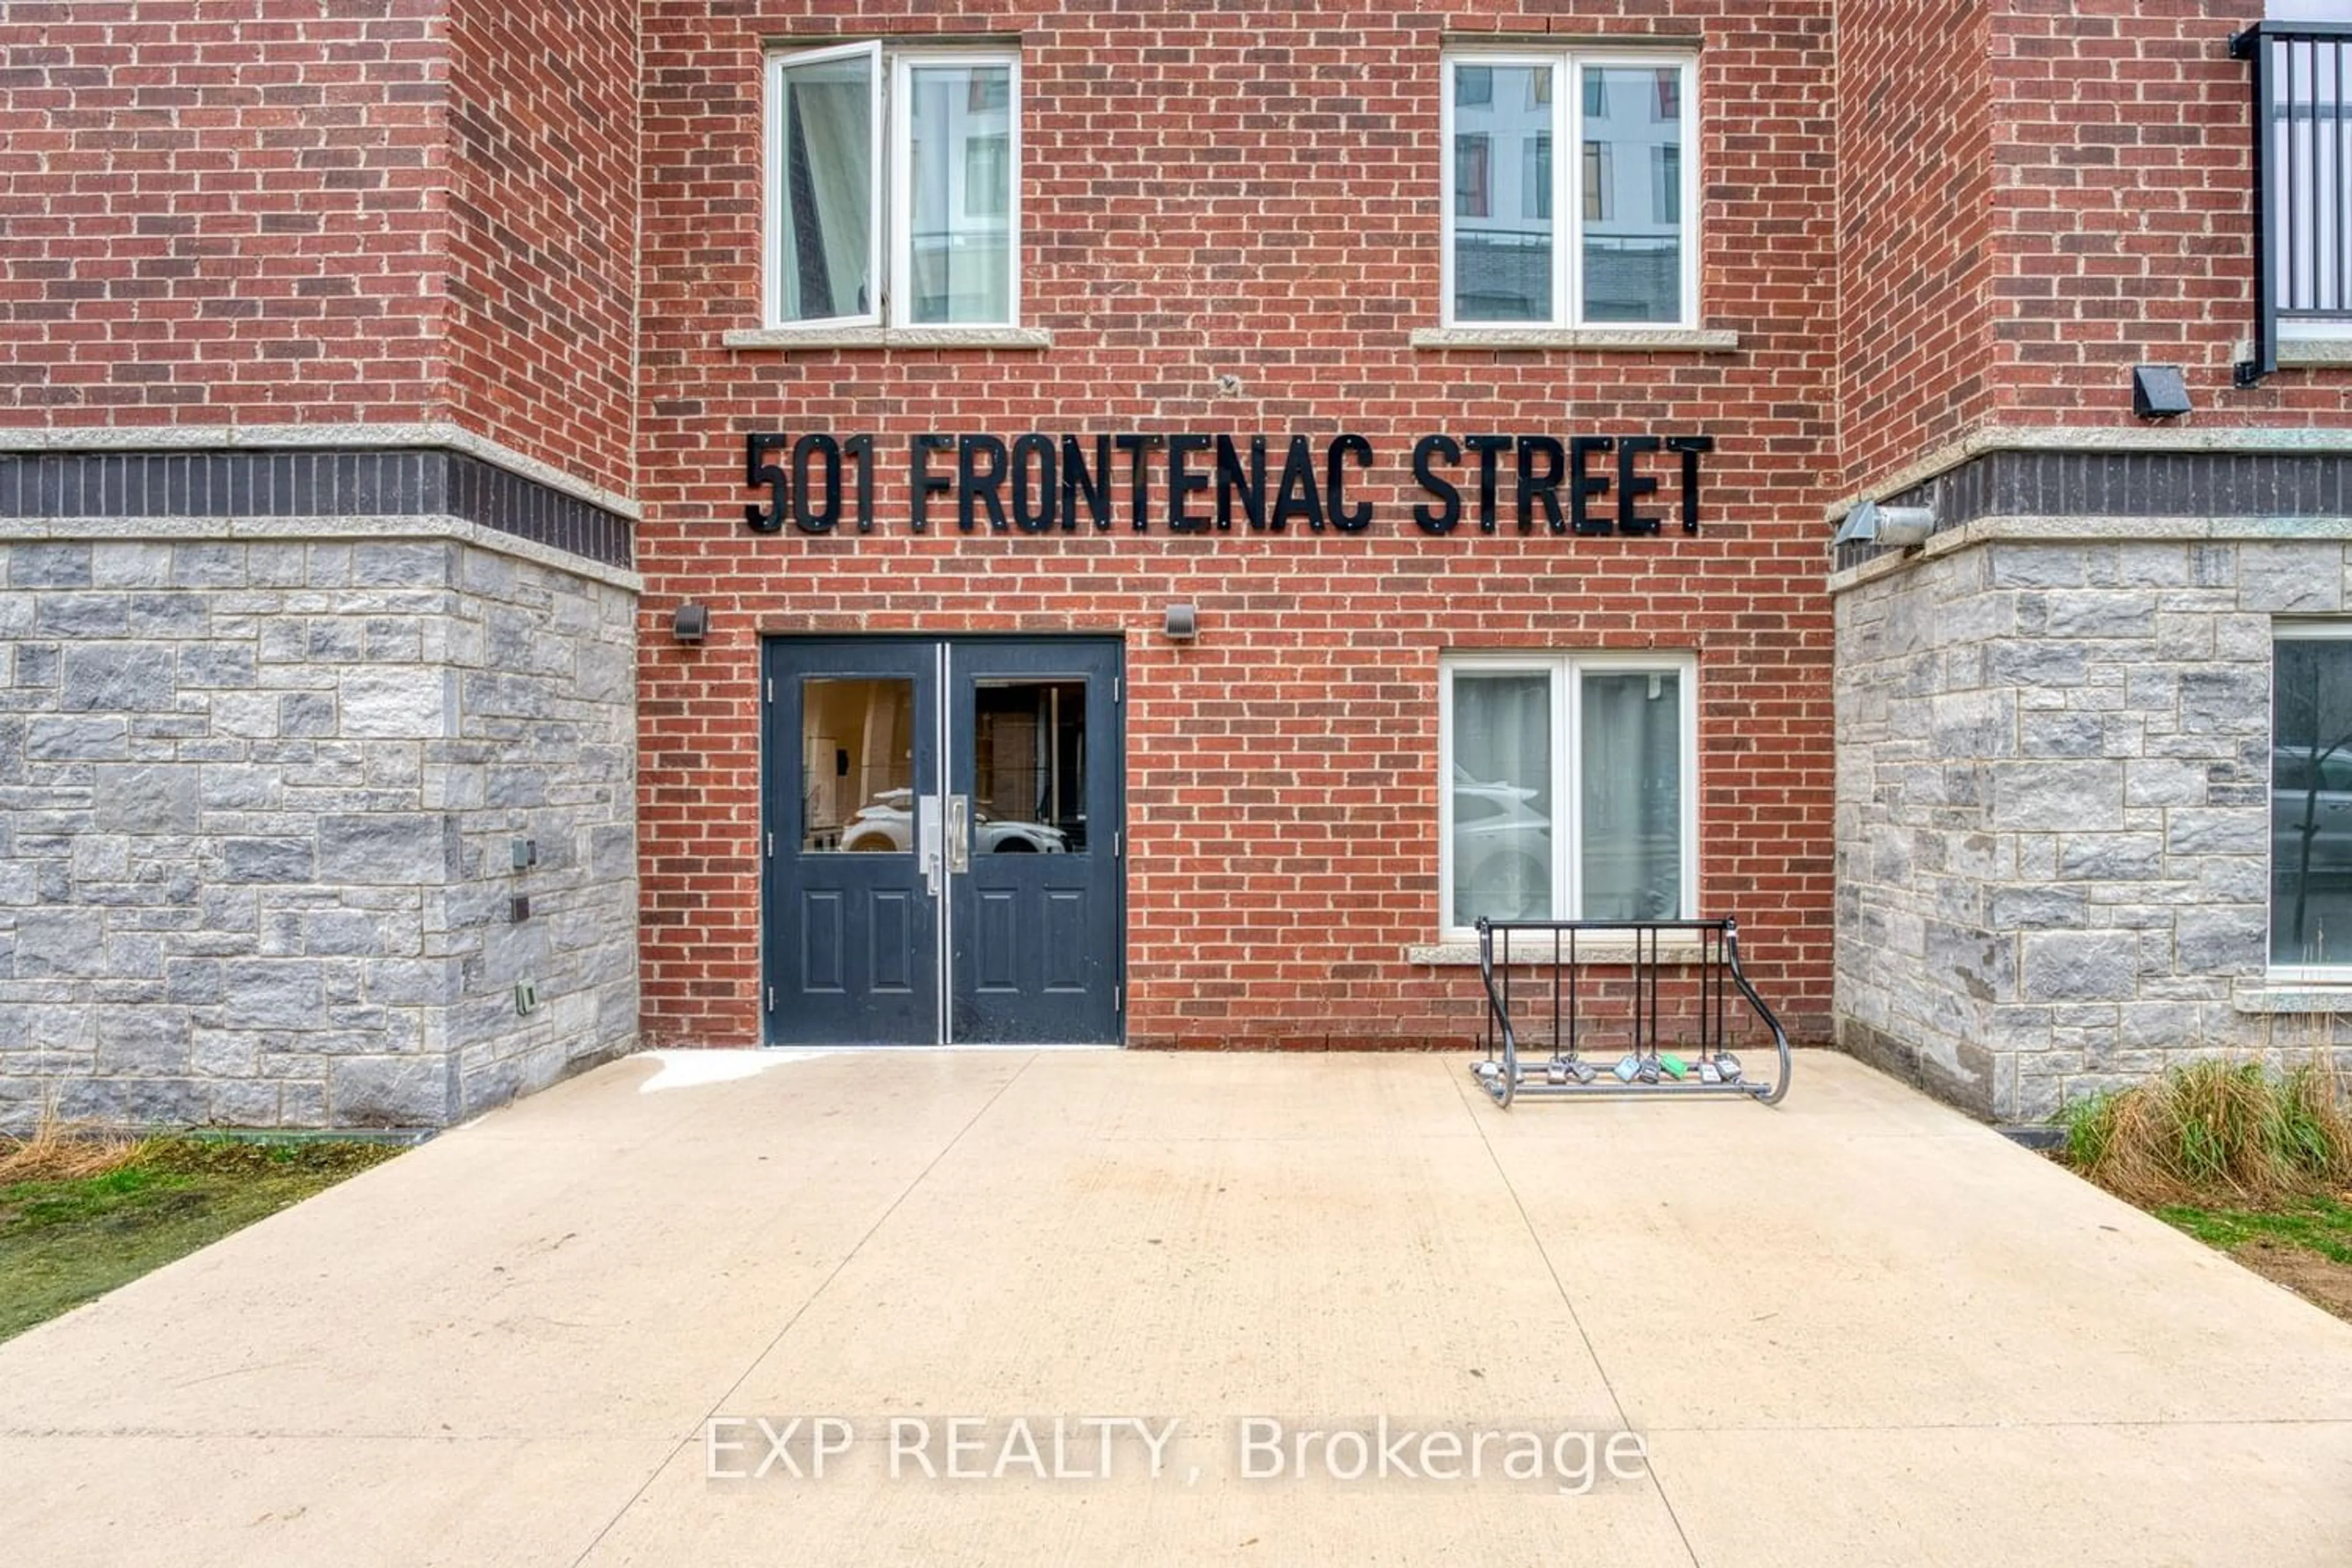 Street view for 501 Frontenac St #405, Kingston Ontario K7K 4L9